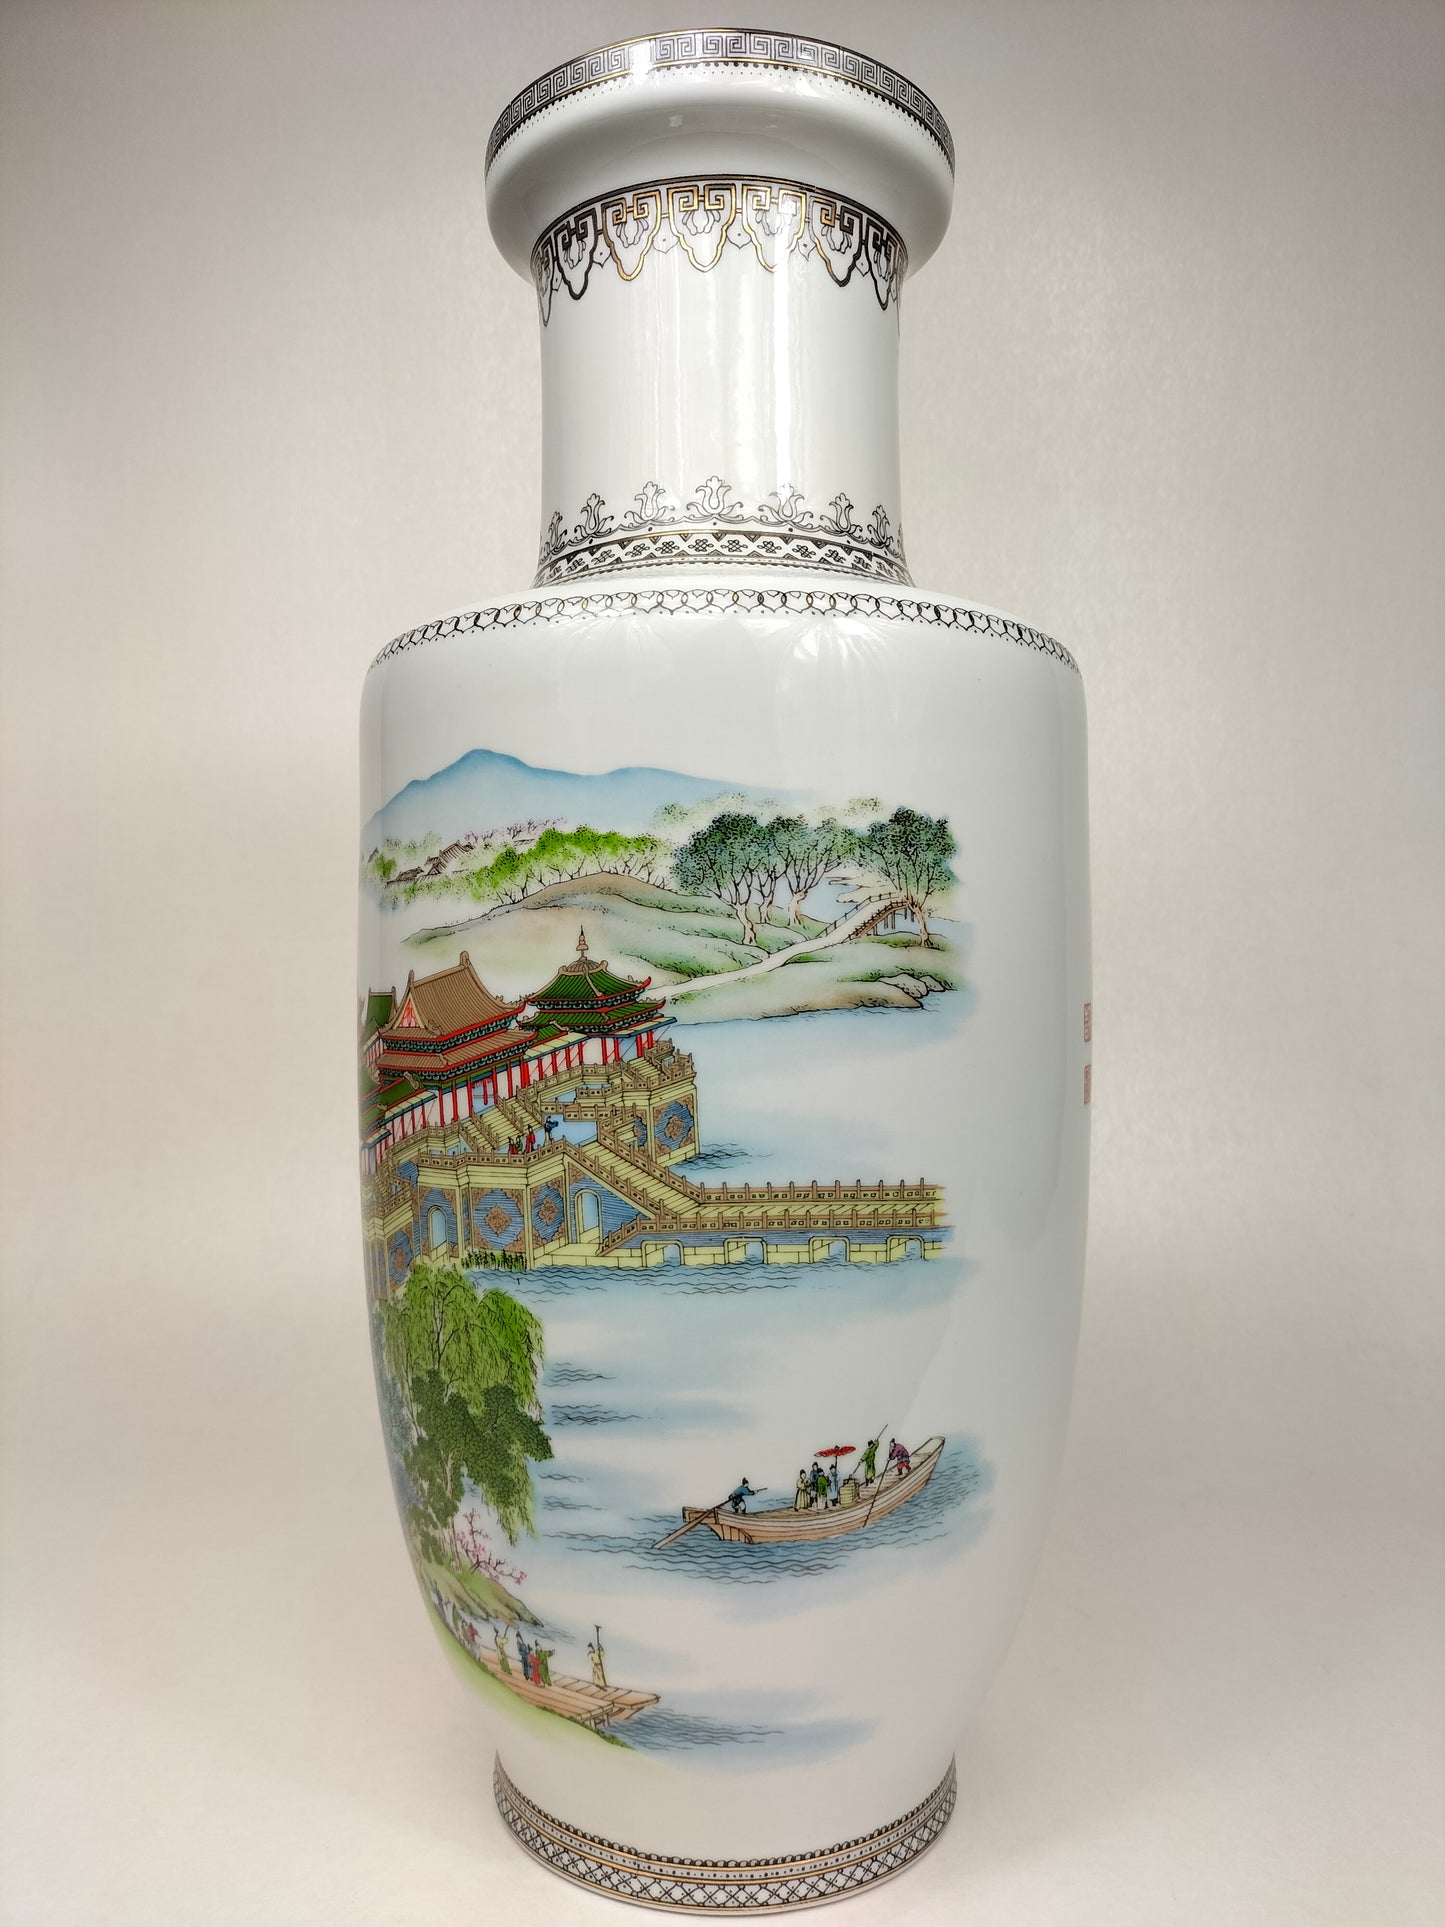 Bình rouleau Trung Quốc được trang trí theo phong cảnh // thế kỷ 20